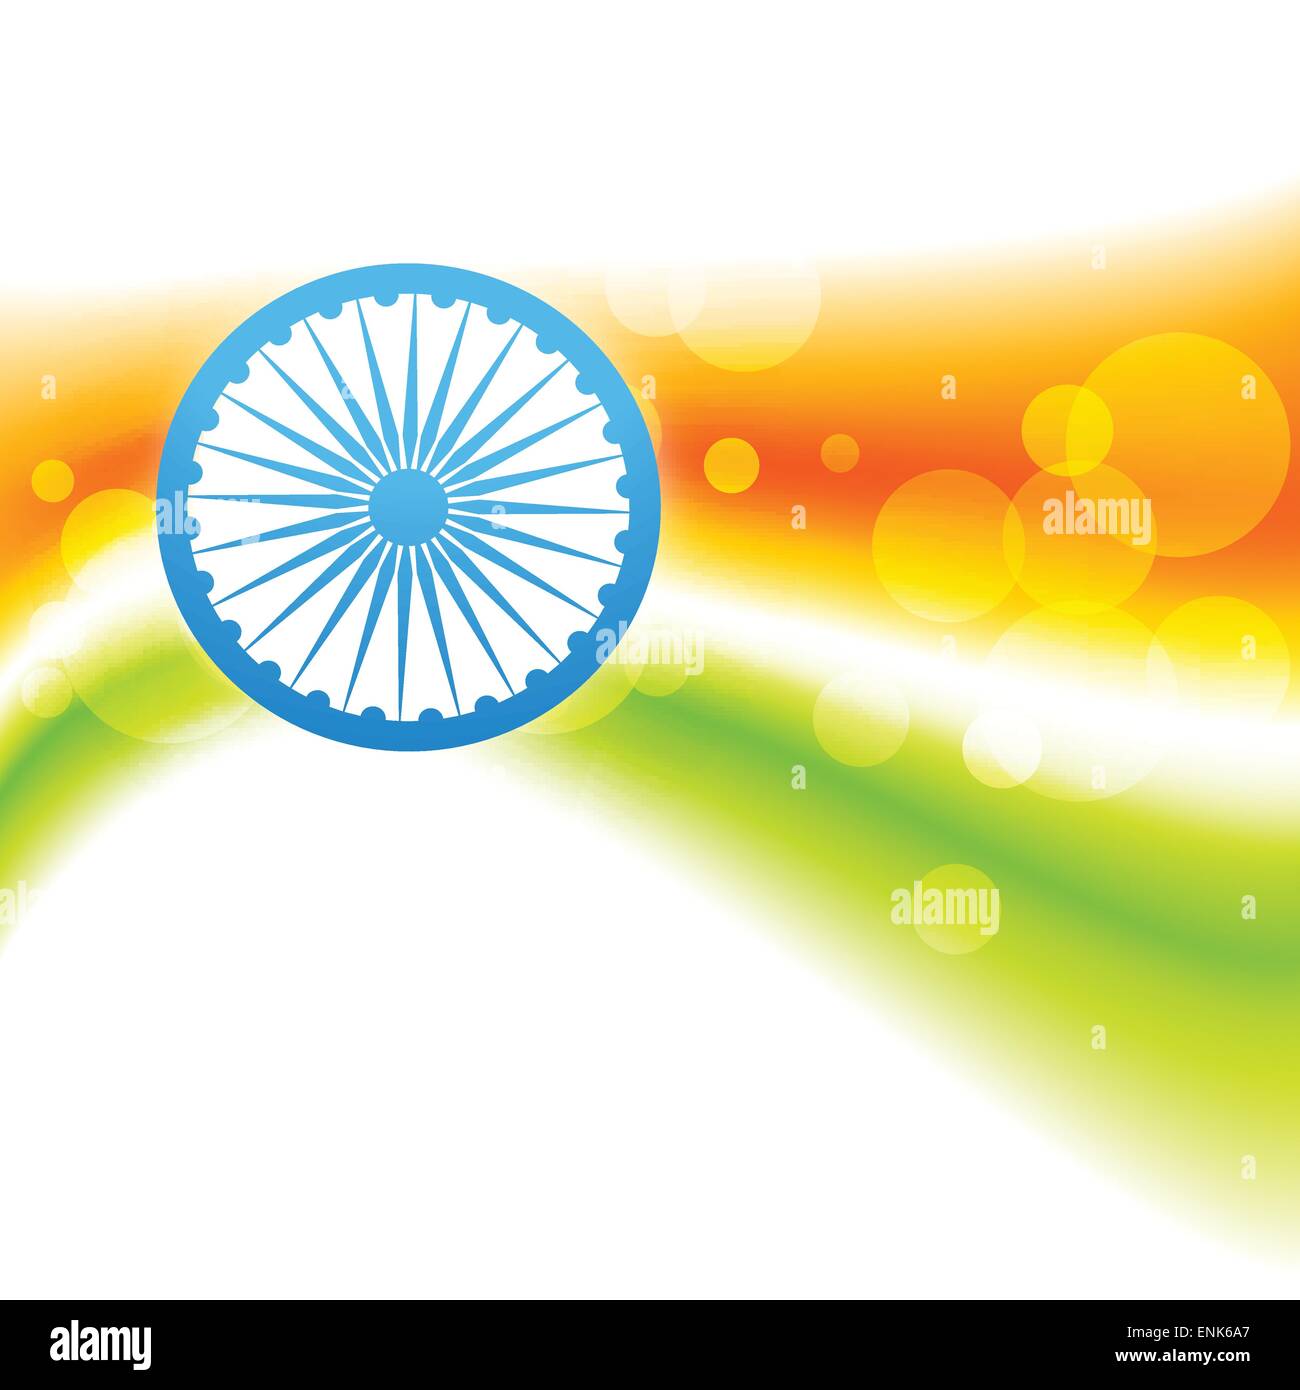 Vector cờ Ấn Độ là một trong những tác phẩm nghệ thuật độc đáo và đẹp mắt nhất. Hãy xem hình ảnh này để tận hưởng sự tinh tế và chuyên nghiệp của nó.